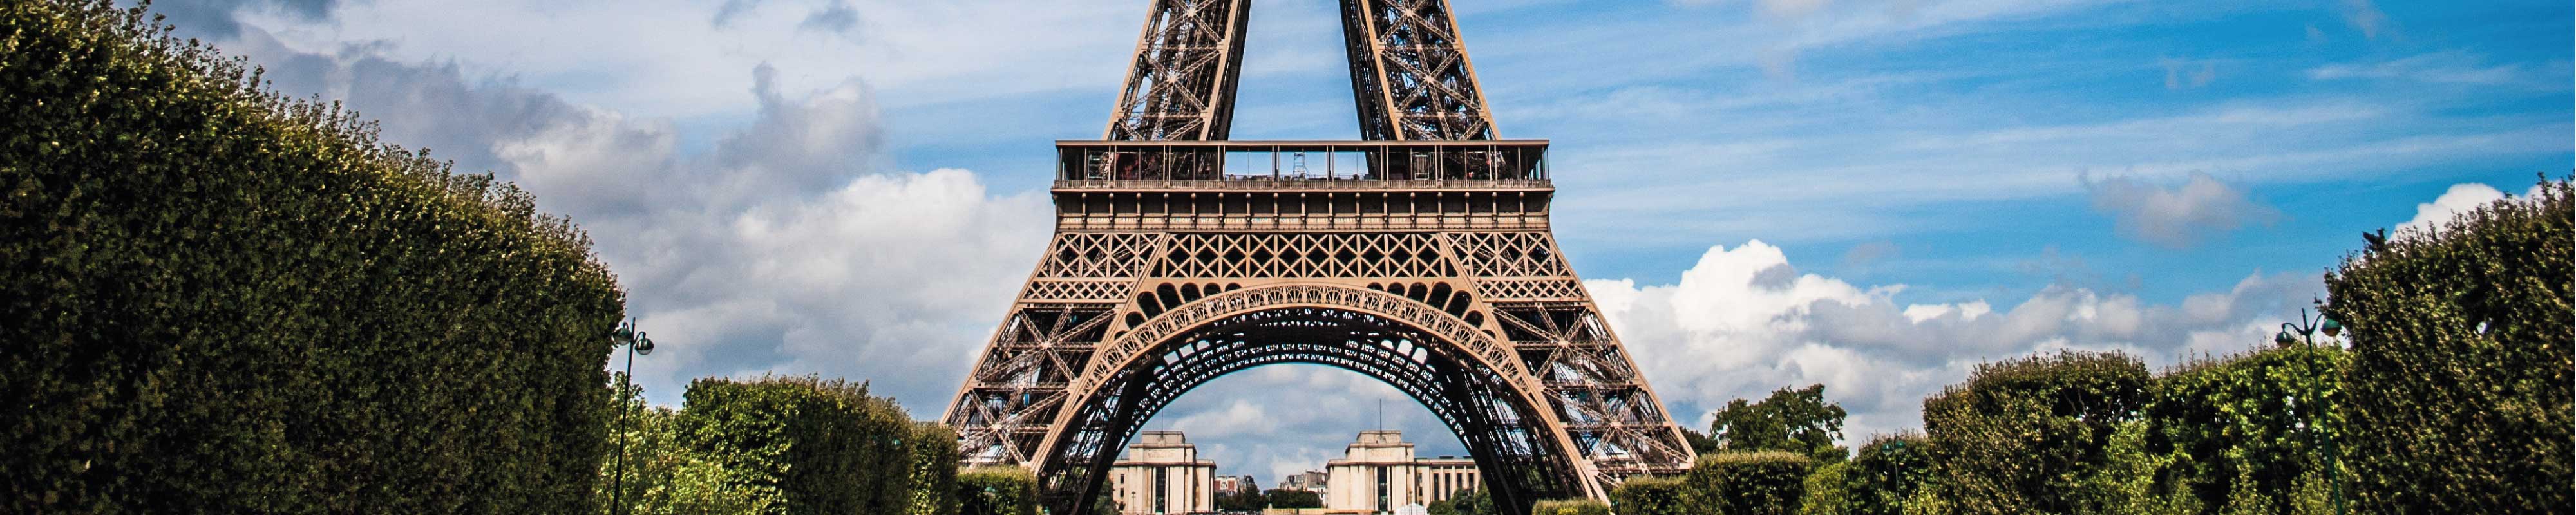 Deposito Bagagli | Torre Eiffel a Parigi - Nannybag